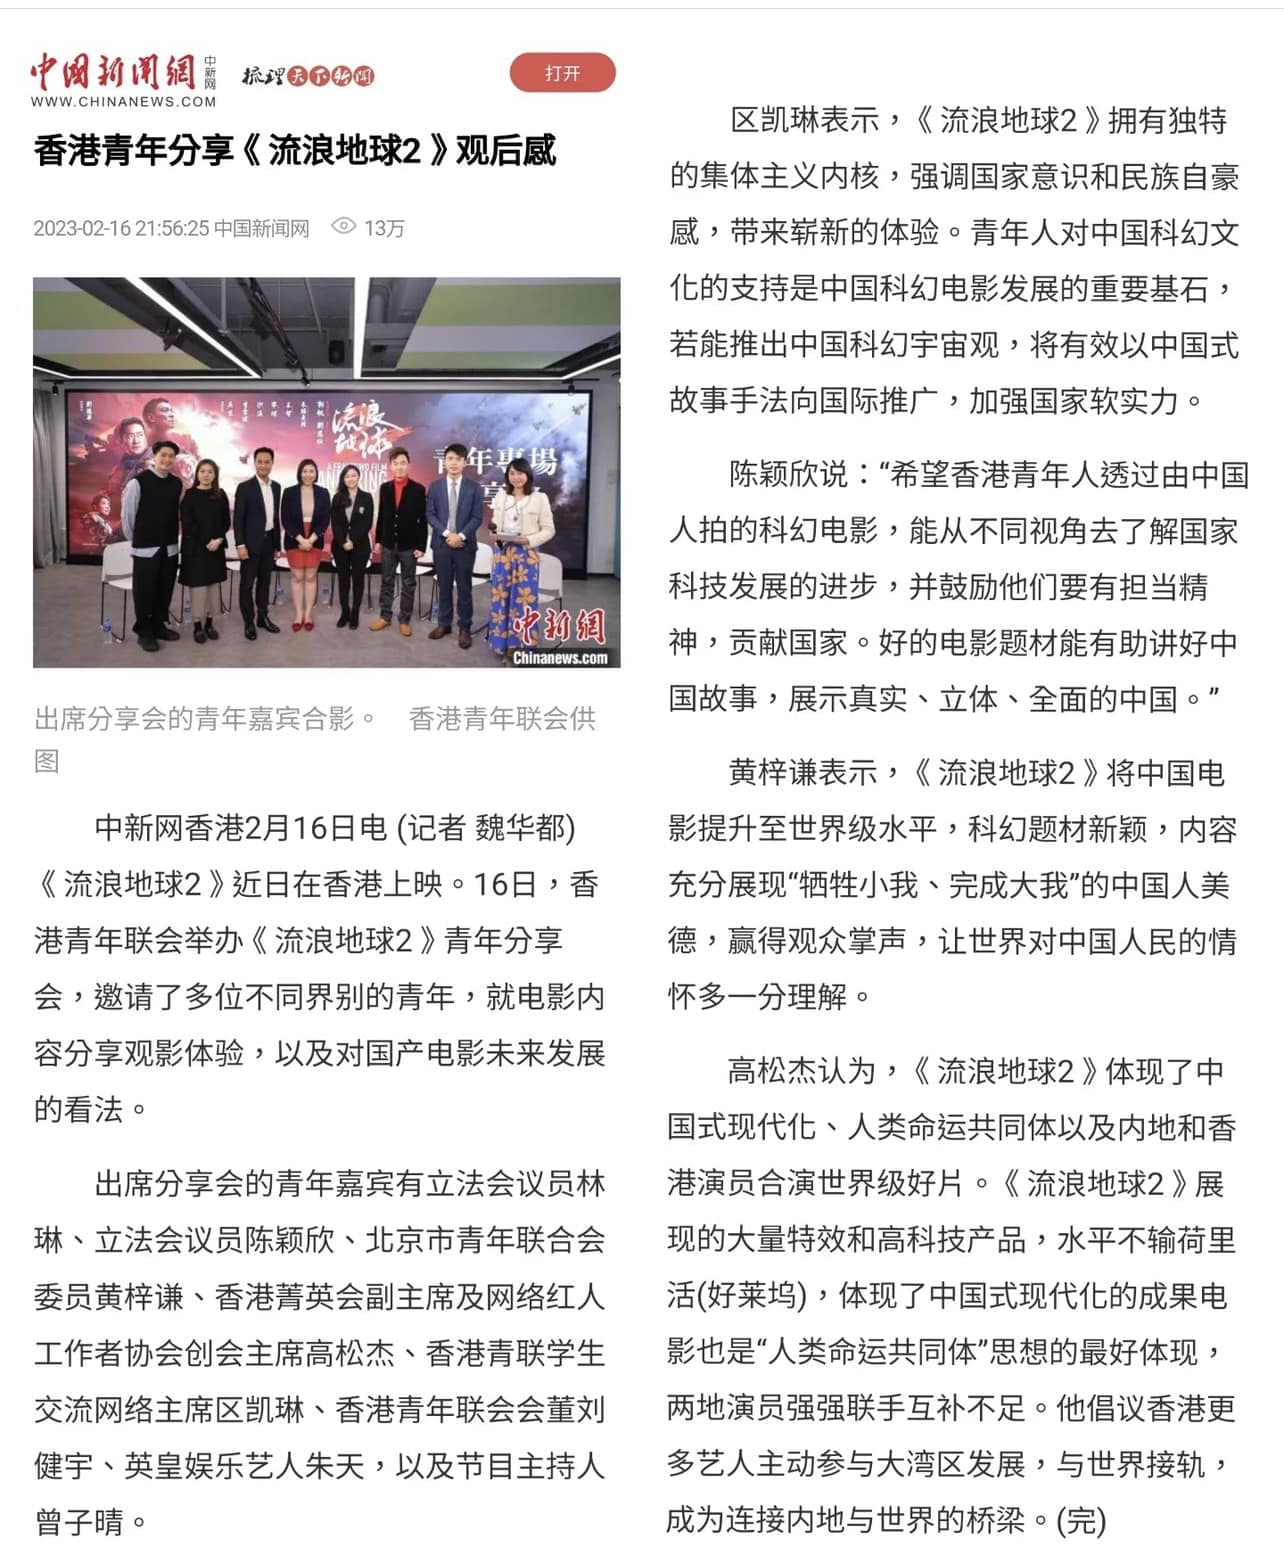 司儀主持人VIVIAN 曾子晴之媒體報導: 中國新聞網：港青觀影《流浪地球2》：展示真實立體全面中國